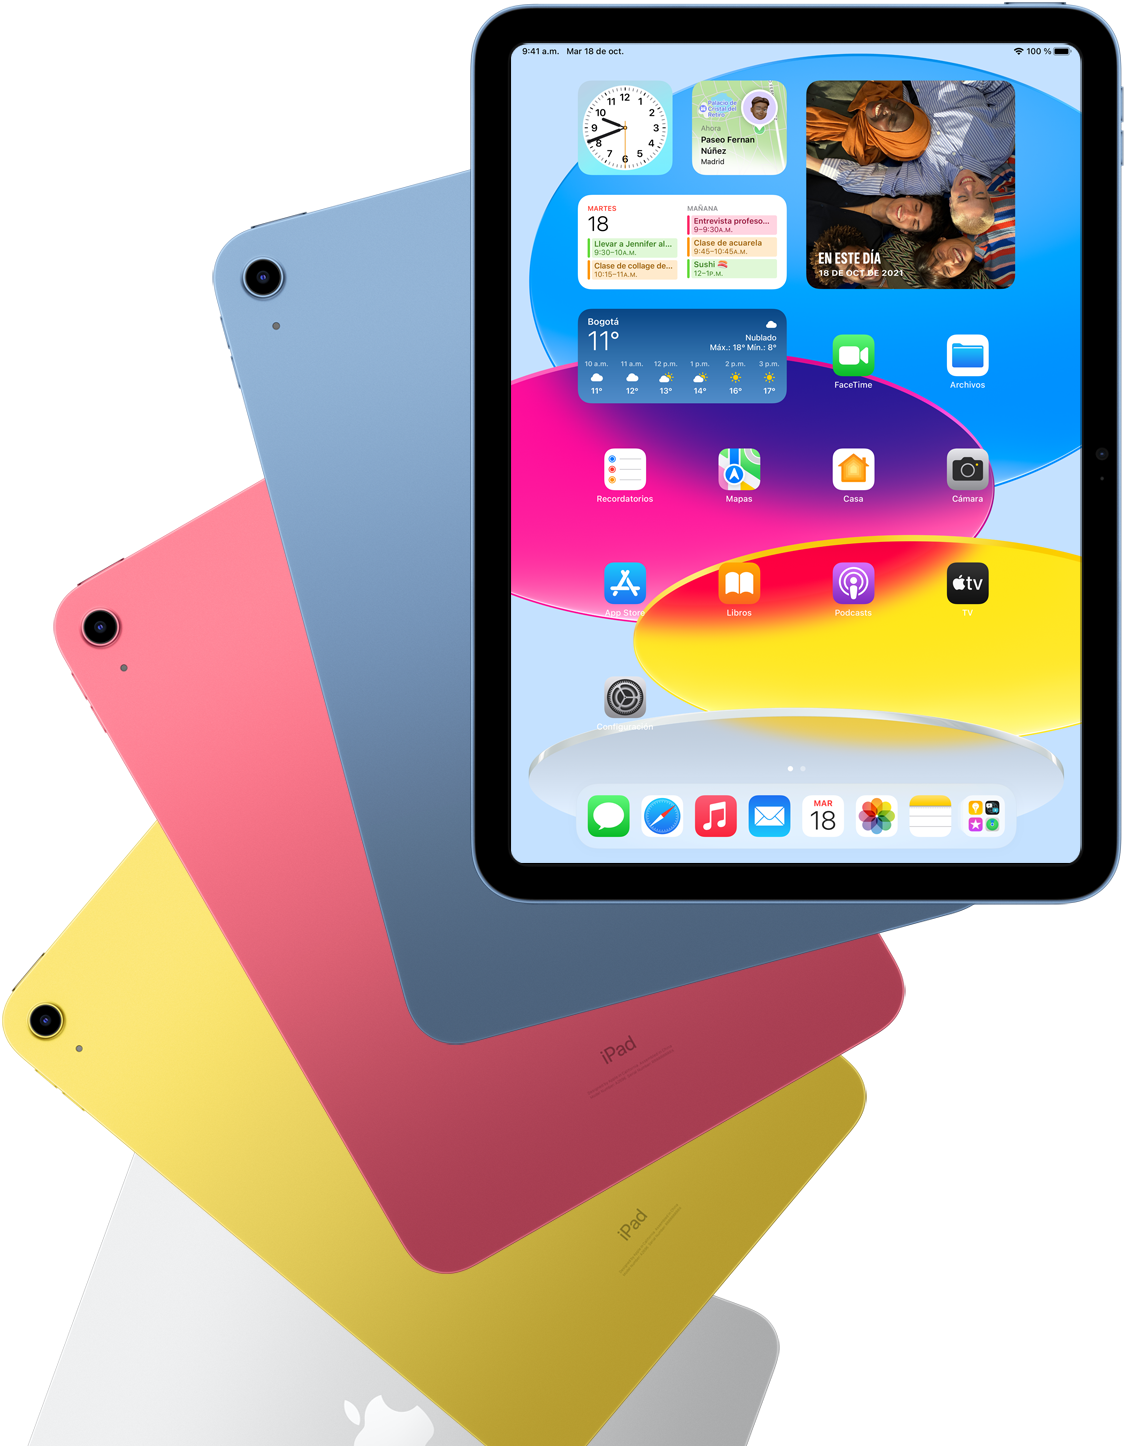 Vista frontal de un iPad con la pantalla de inicio y, por detrás, vistas traseras de otros dispositivos iPad en azul, rosa, amarillo y color plata.